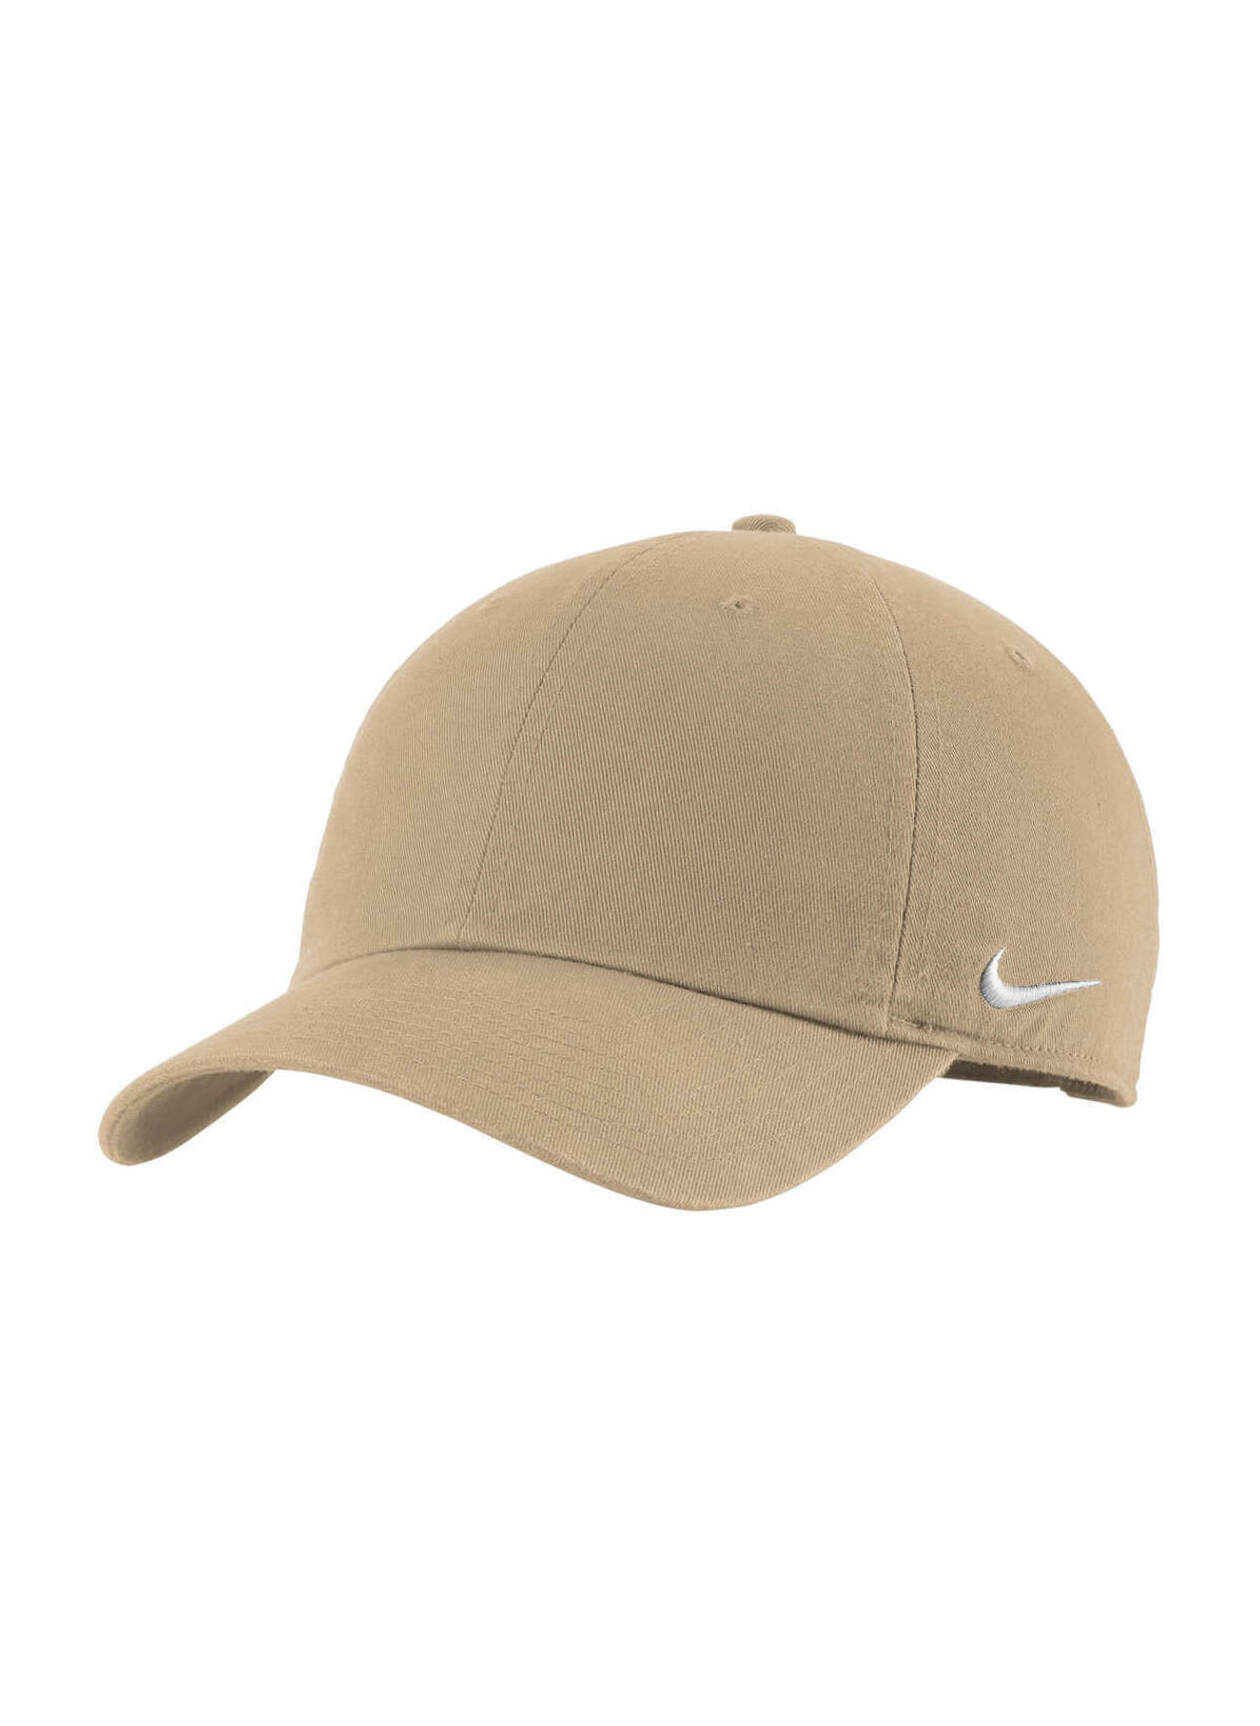 Nike Khaki Team Campus Hat